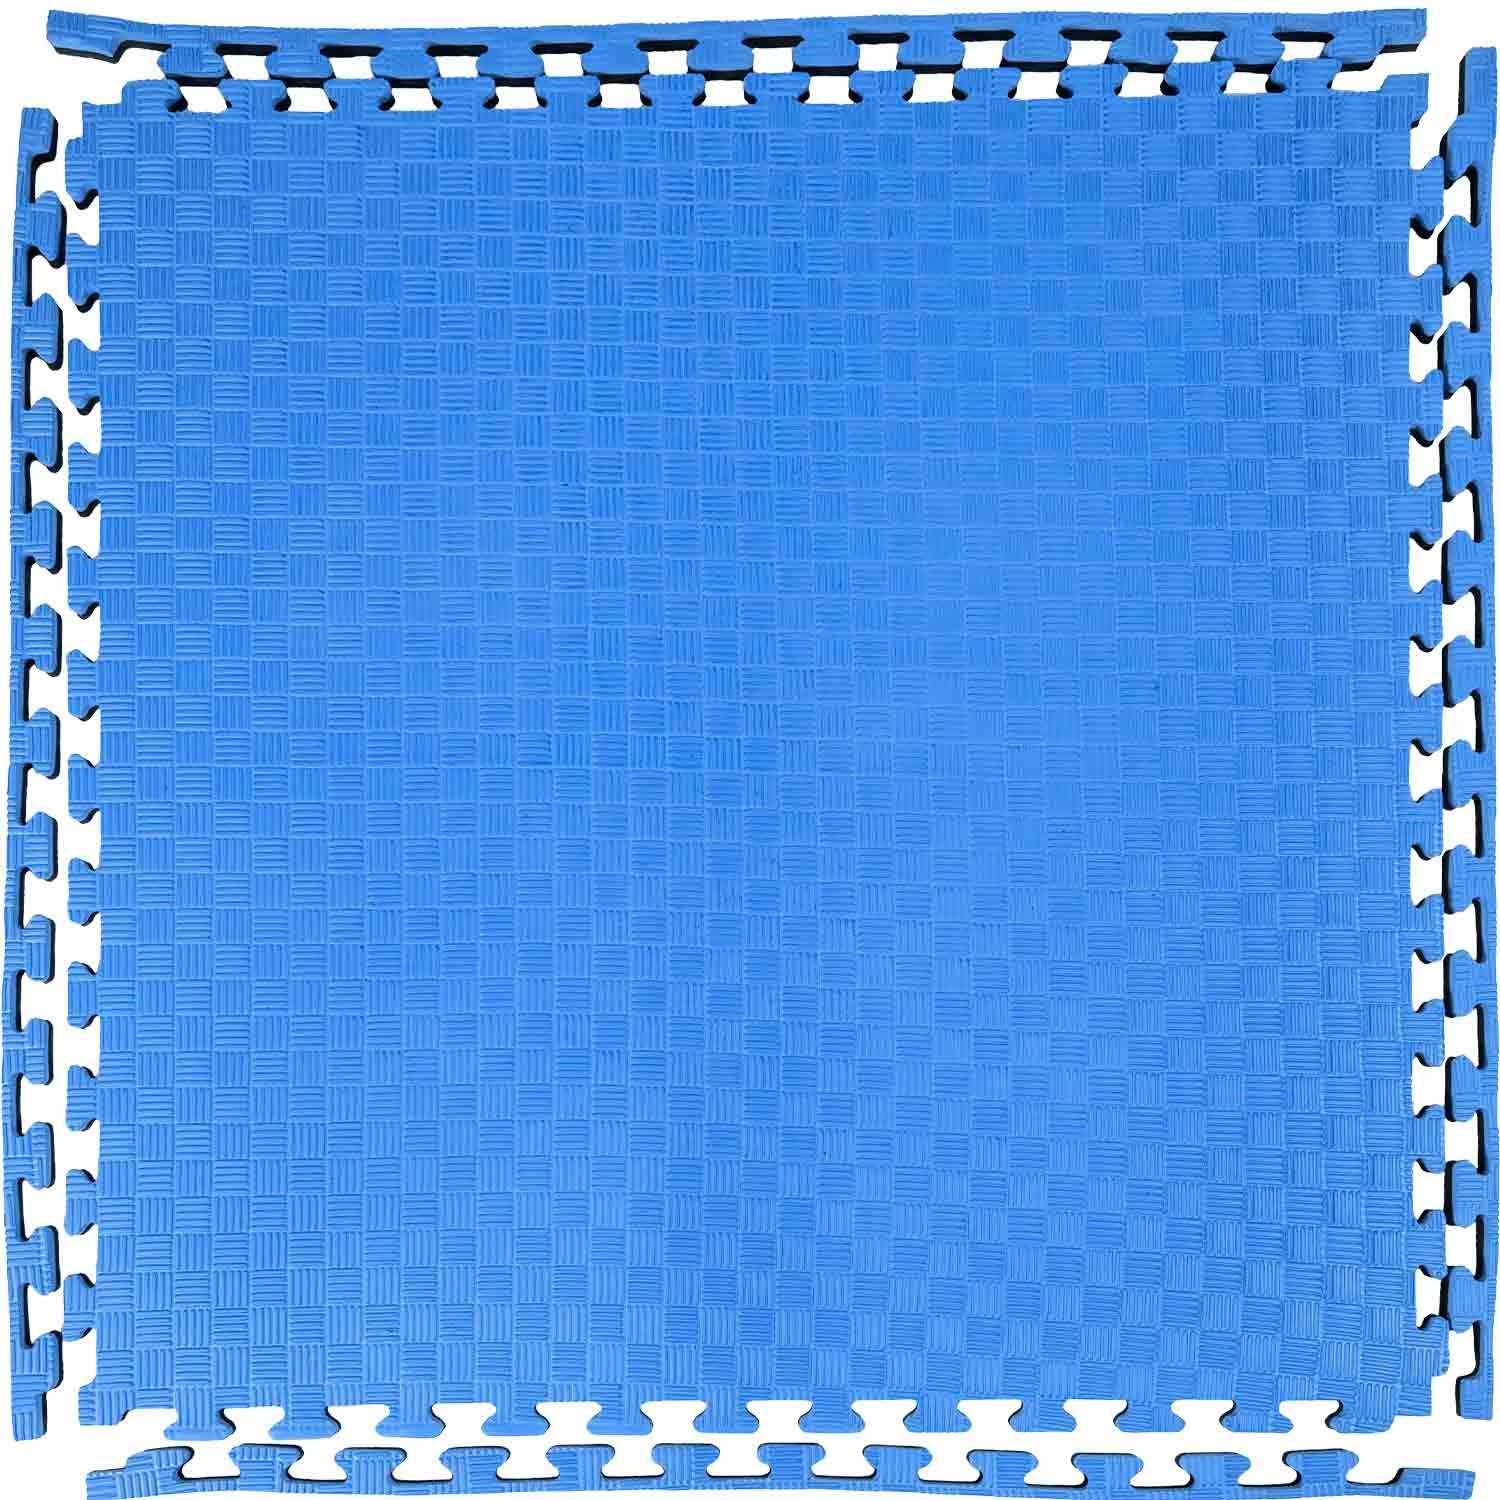 Goma Eva / EVA / Fommy 50 x 100 cm - Azul Eléctrico por metros